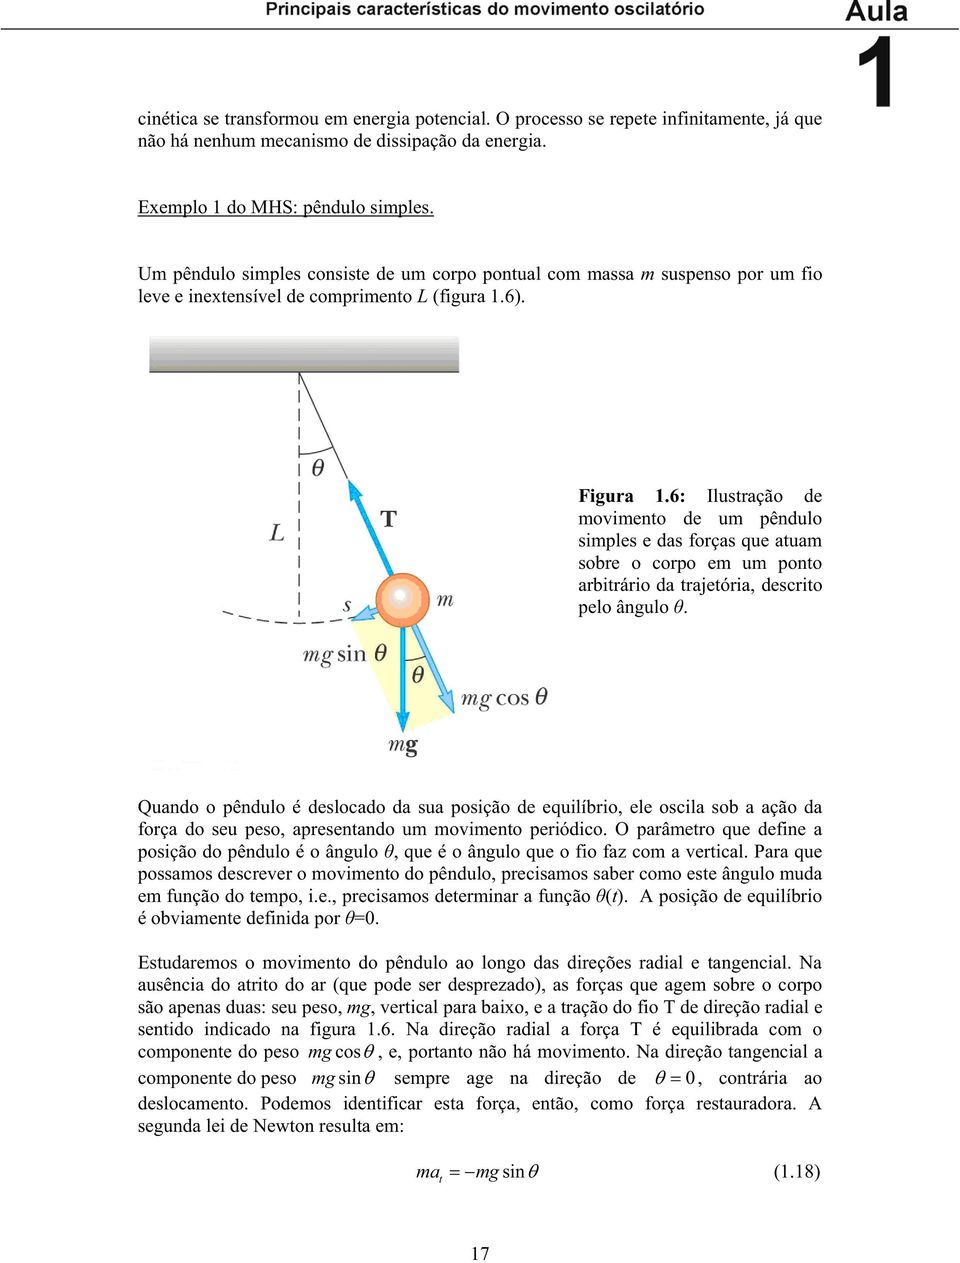 6: Ilustração de oviento de u pêndulo siples e das forças que atua sobre o corpo e u ponto arbitrário da trajetória, descrito pelo ângulo.